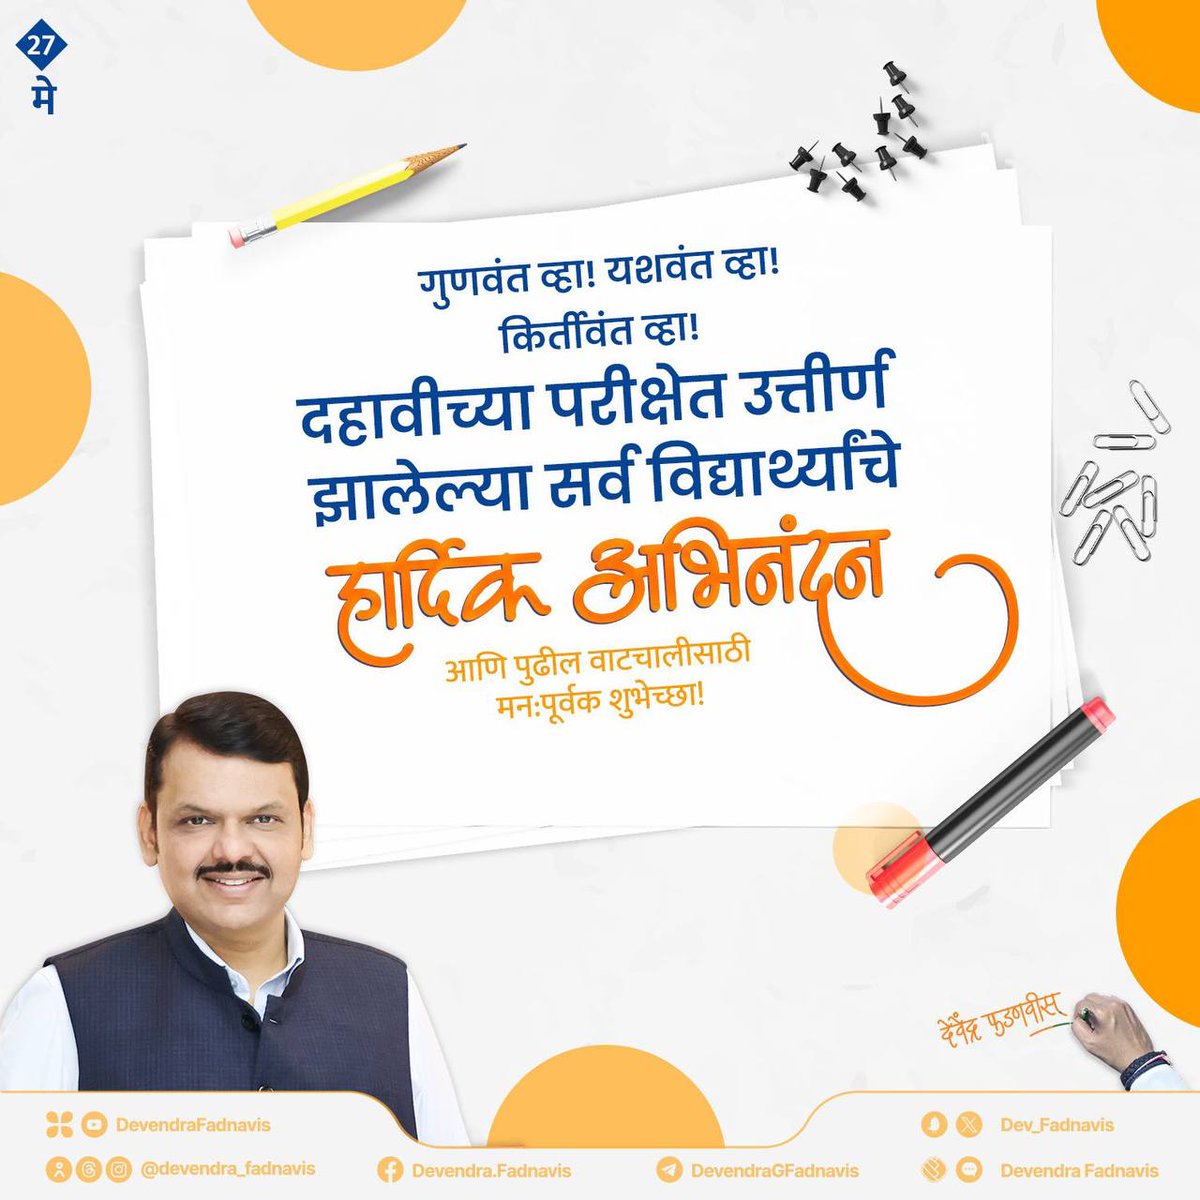 दहावीच्या परीक्षेमध्ये उत्तीर्ण झालेल्या सर्व यशस्वी विद्यार्थ्यांचे मनःपूर्वक अभिनंदन आणि भावी जीवनासाठी खूप-खूप शुभेच्छा...!
@Dev_Fadnavis जी..

#sscresult2024 #10thResult #Education #Maharashtra
@Team__Devendra #team_Devendra